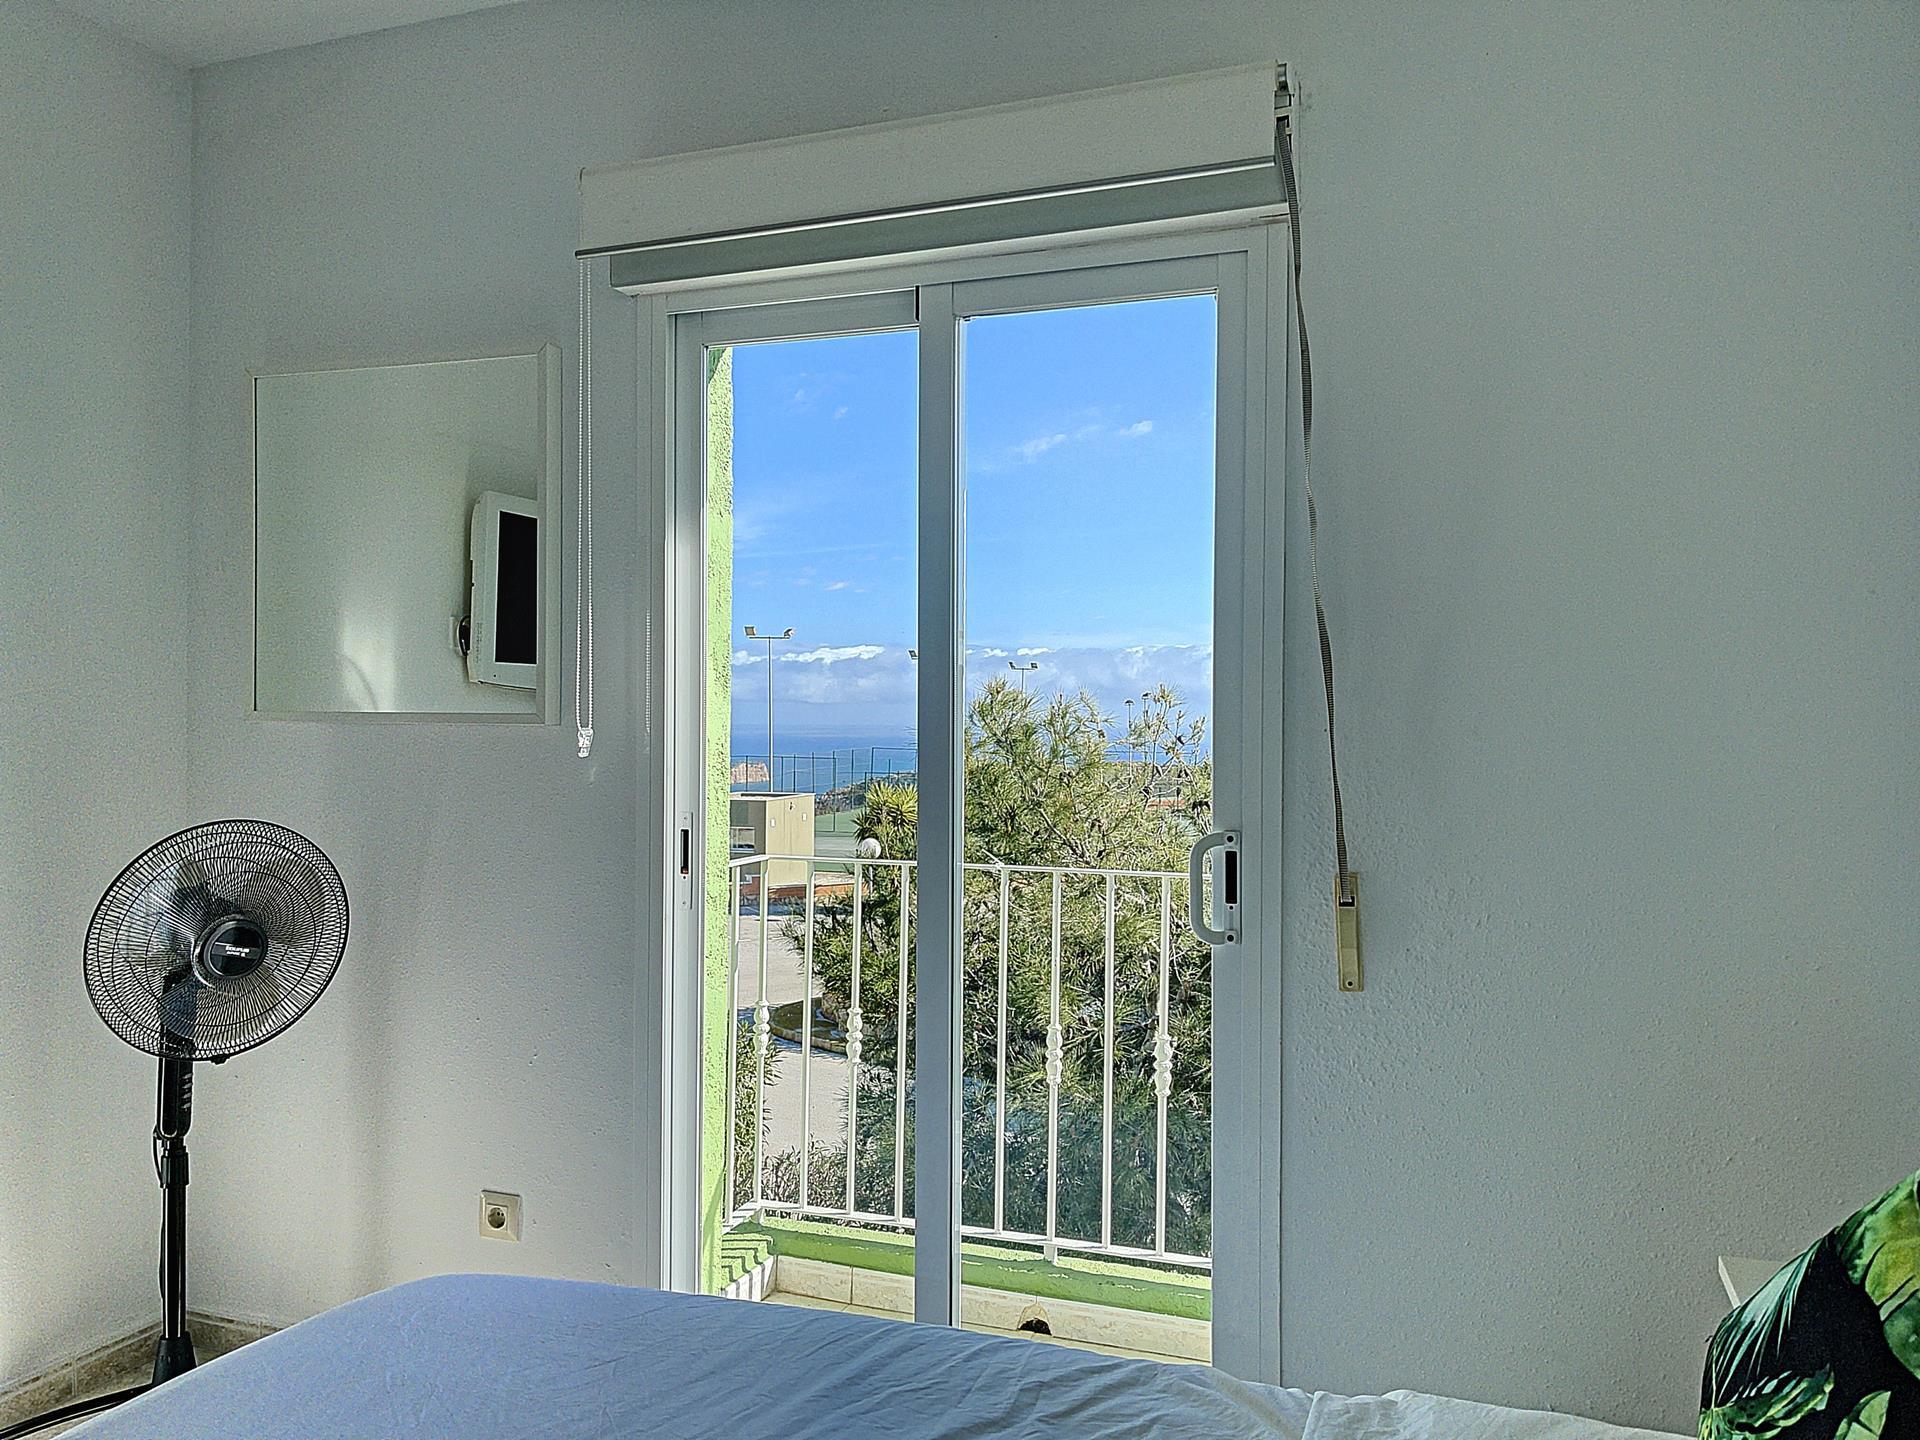 Dotato di vista sul mare, questo appartamento offre una terrazza solarium